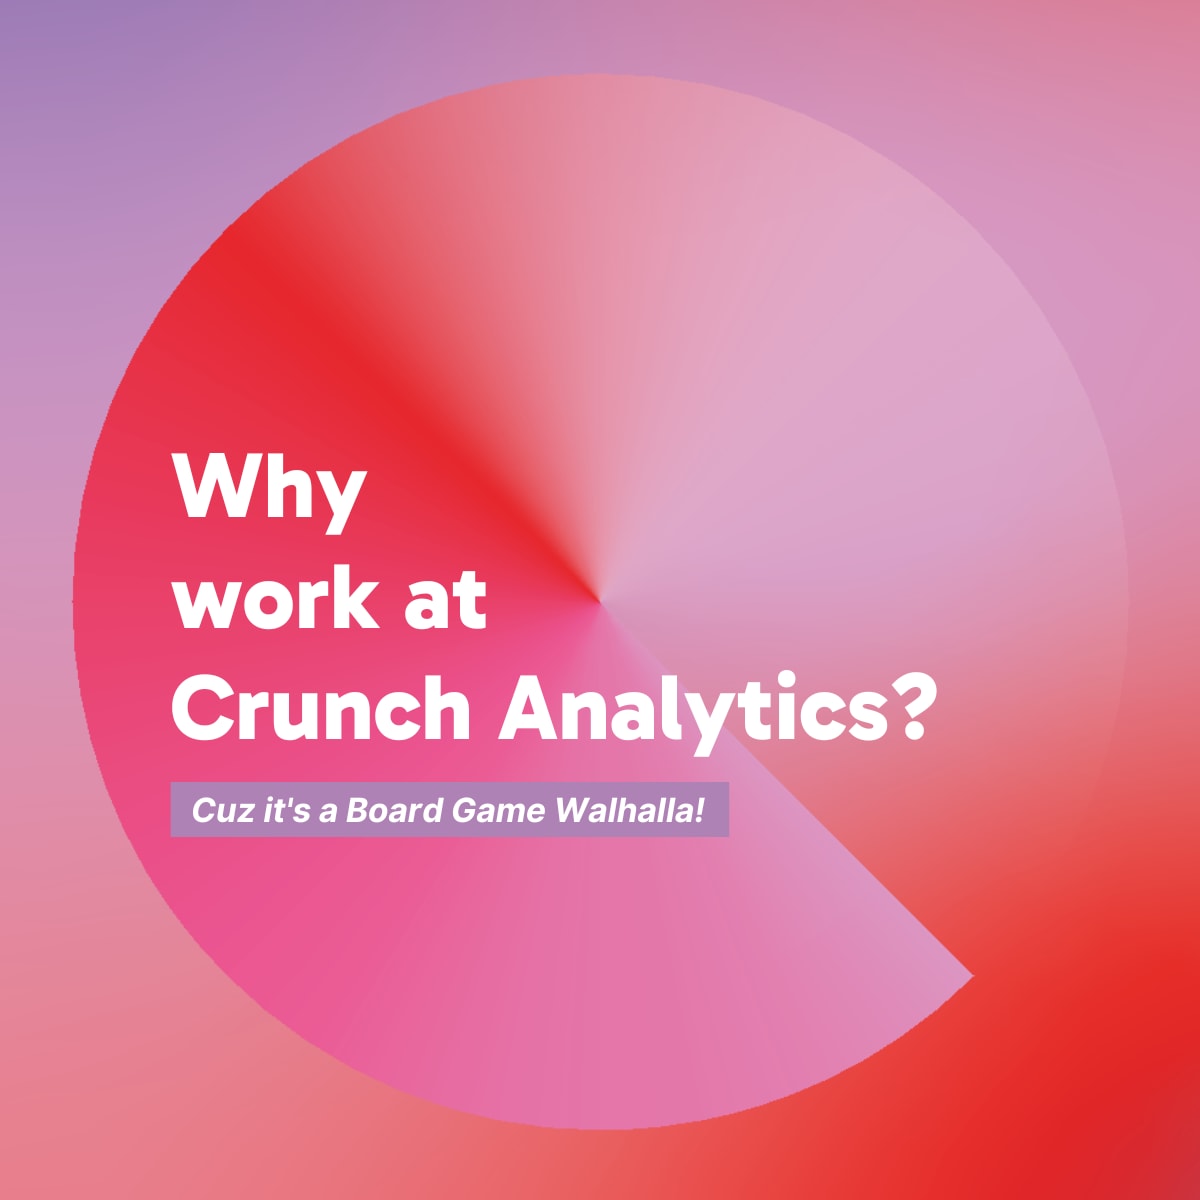 Why work at Crunch Analytics?